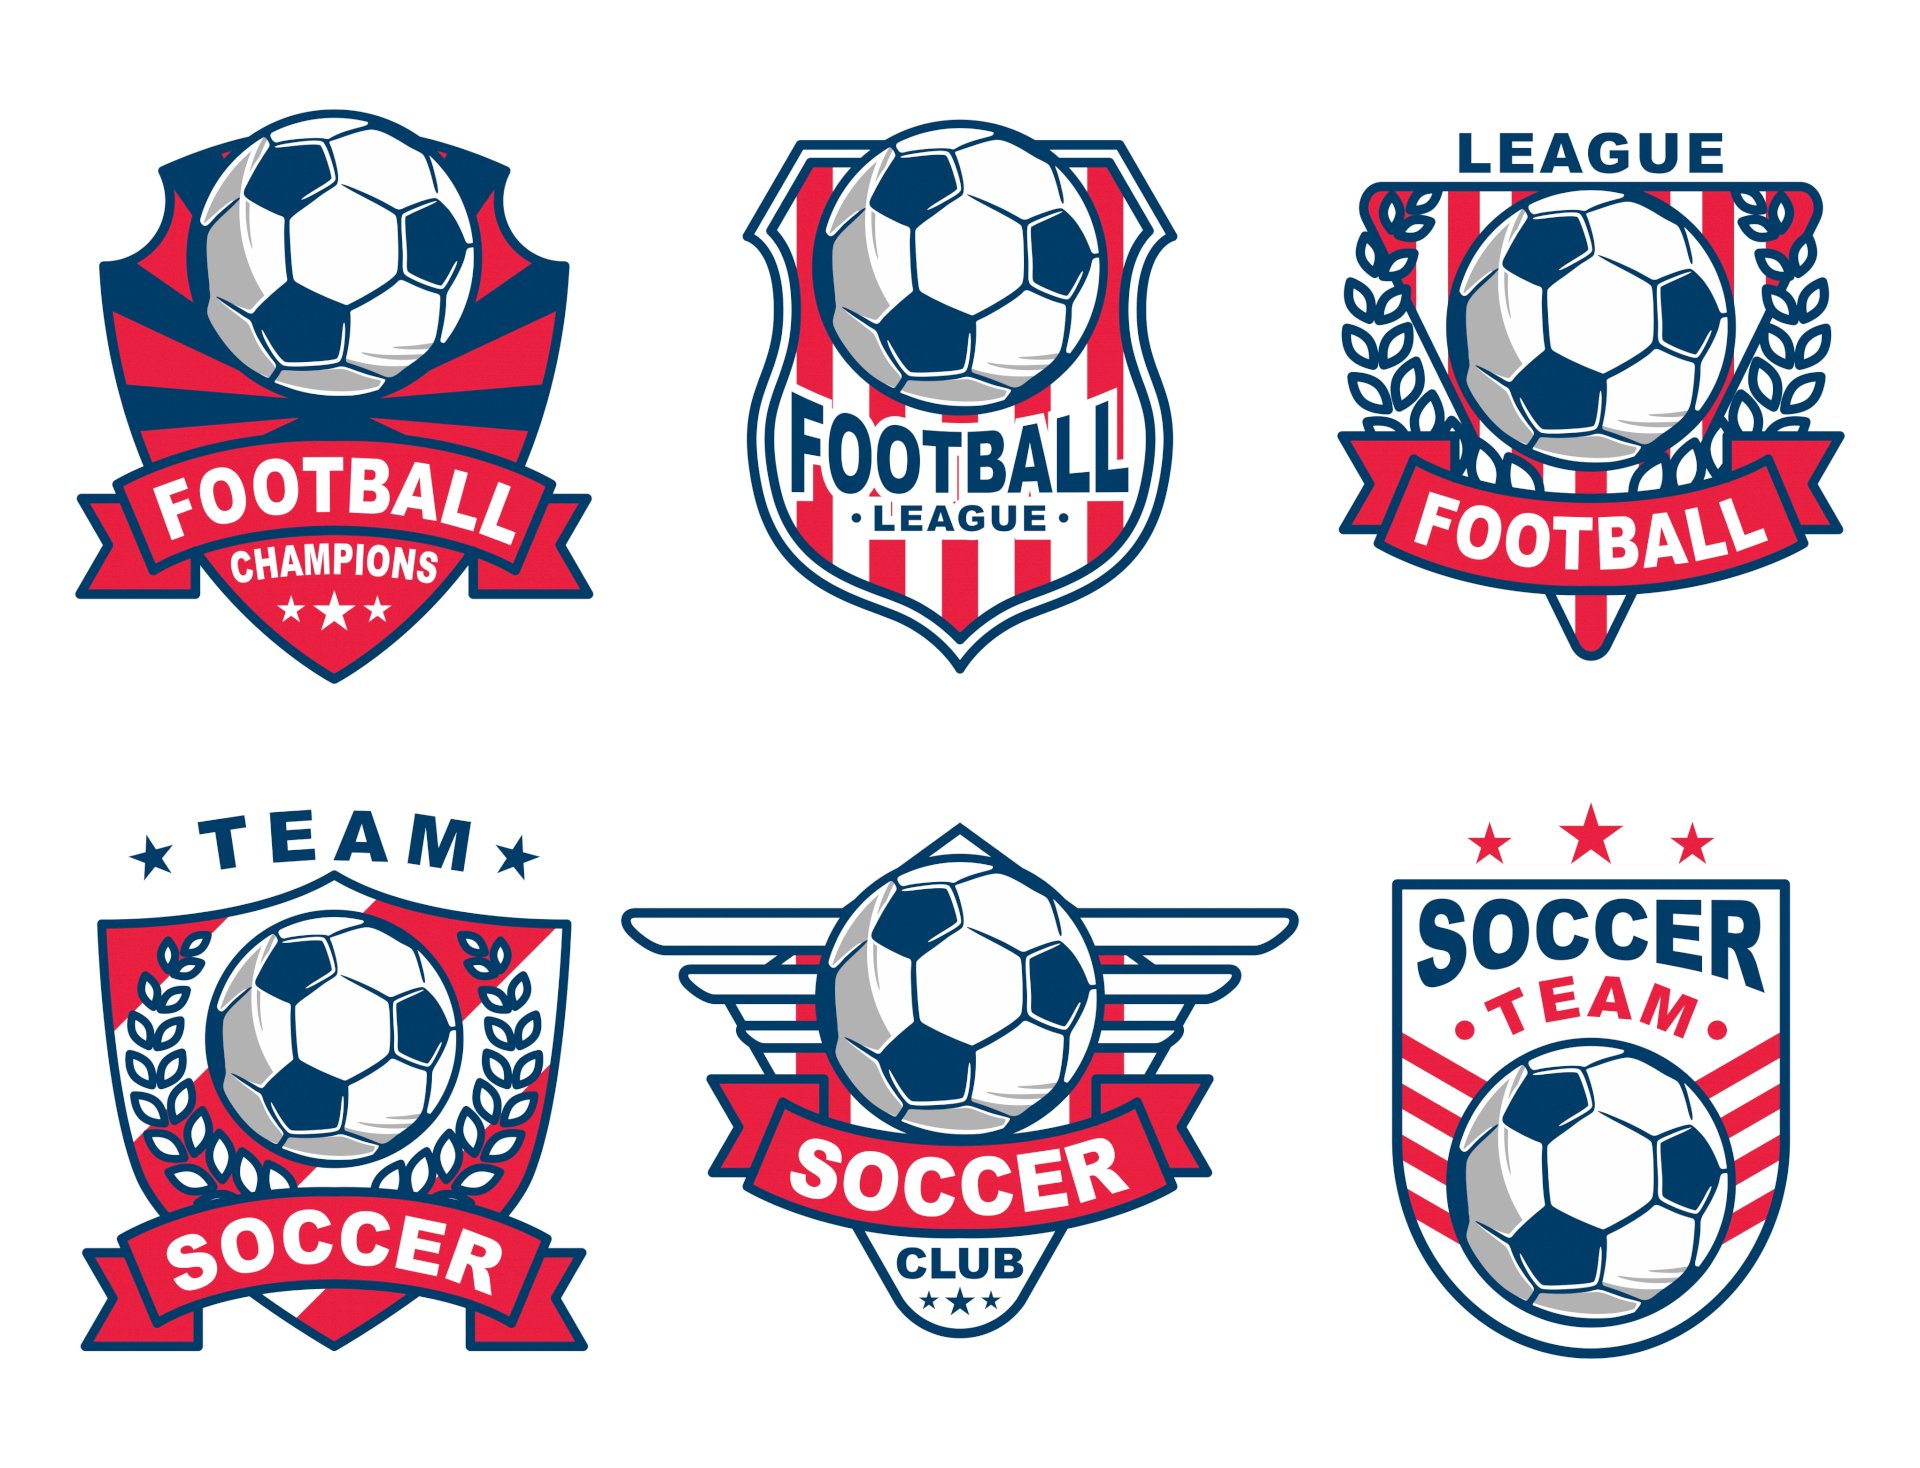 Hãy tải mẫu logo đội bóng để đưa đội của bạn đến một tầm cao mới. Với các mẫu độc đáo và chuyên nghiệp, bạn sẽ có được một logo đội bóng đẹp và đầy cảm hứng.